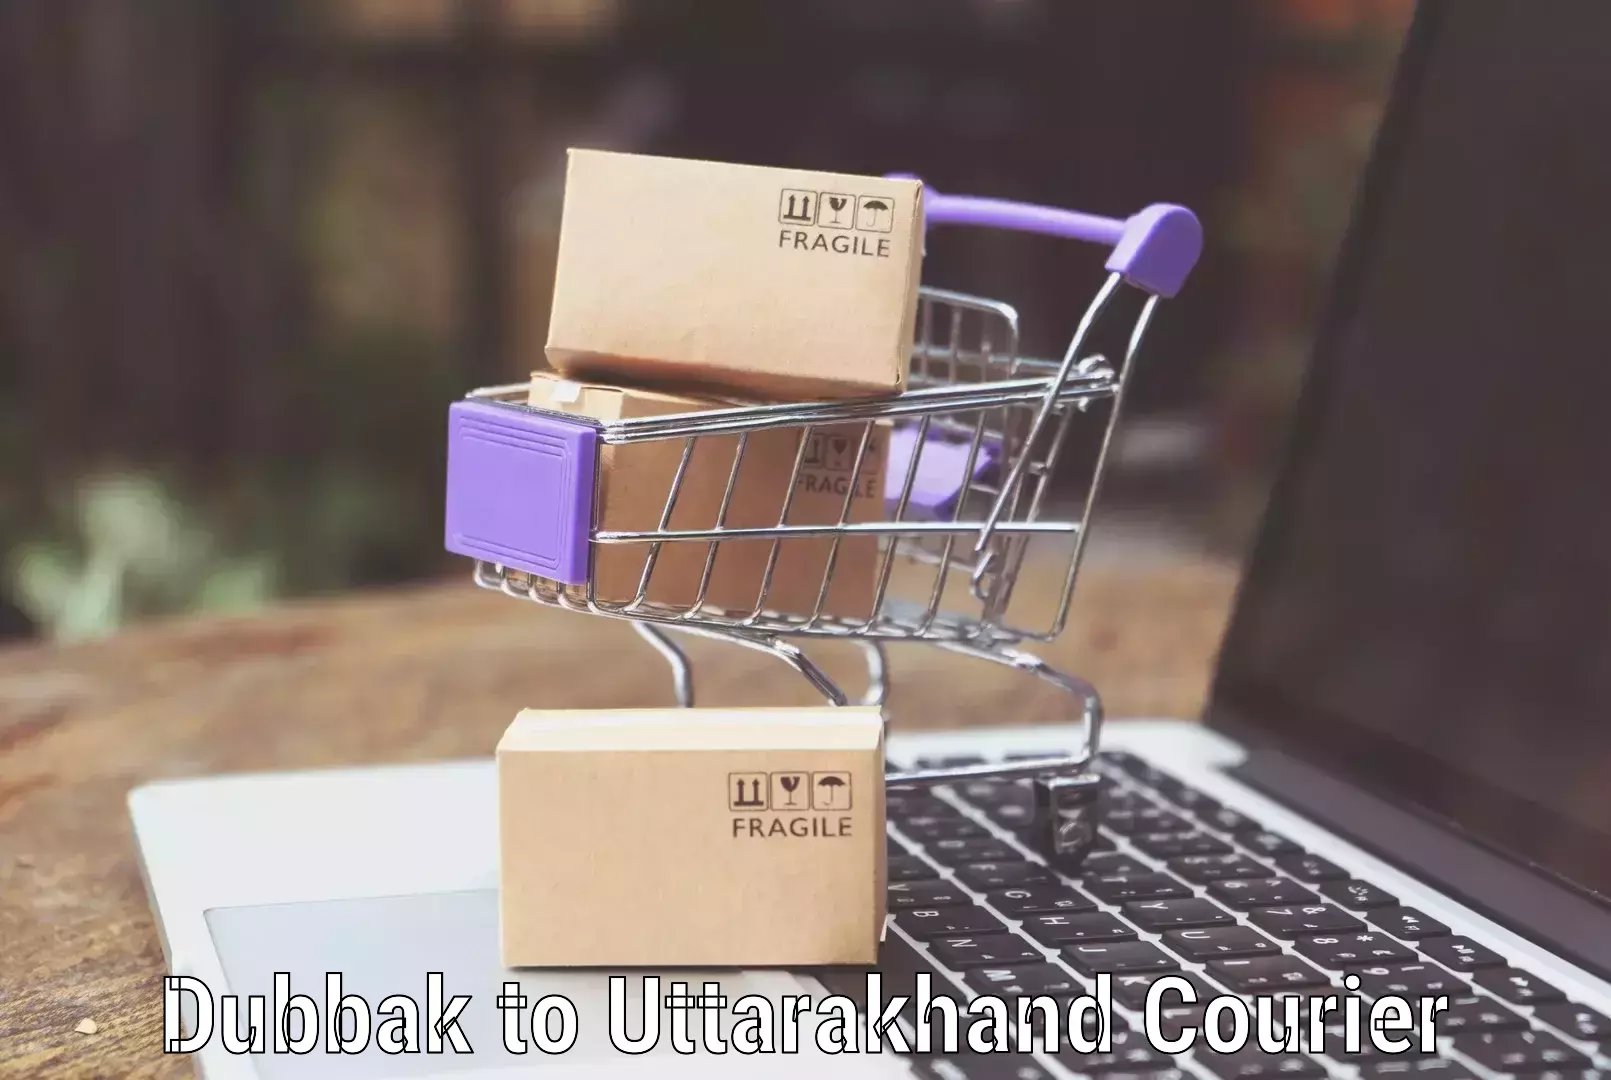 Luggage shipment processing Dubbak to Uttarakhand